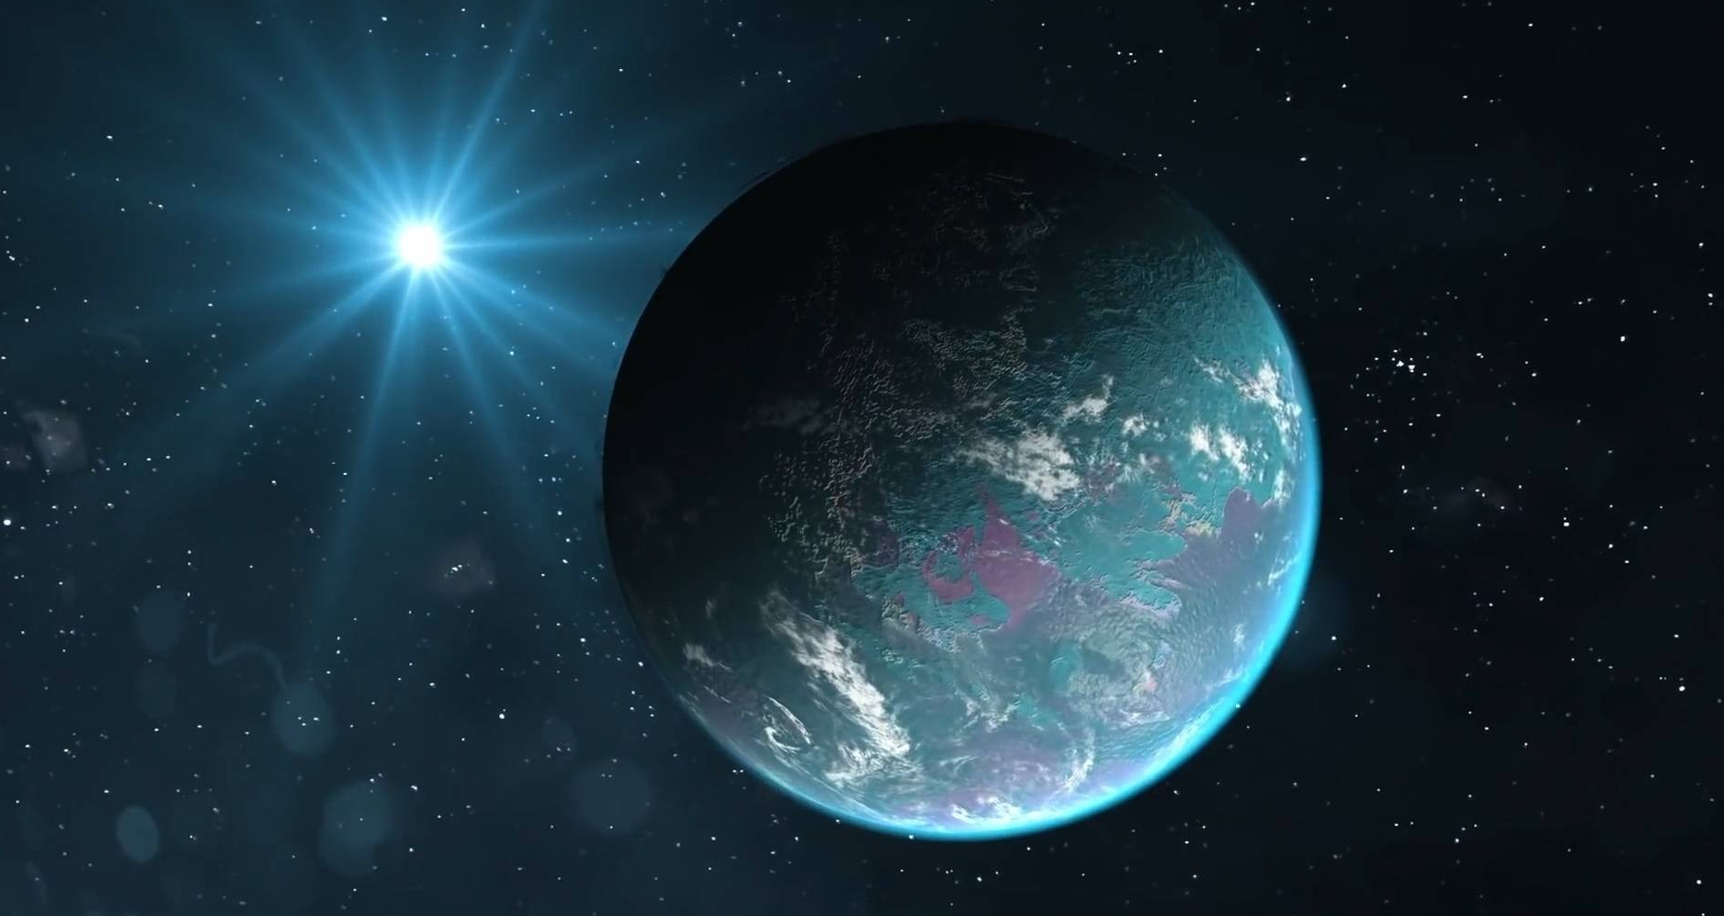 回顾:100%存在生命?超级地球格利泽581g,为何会被寄予厚望?